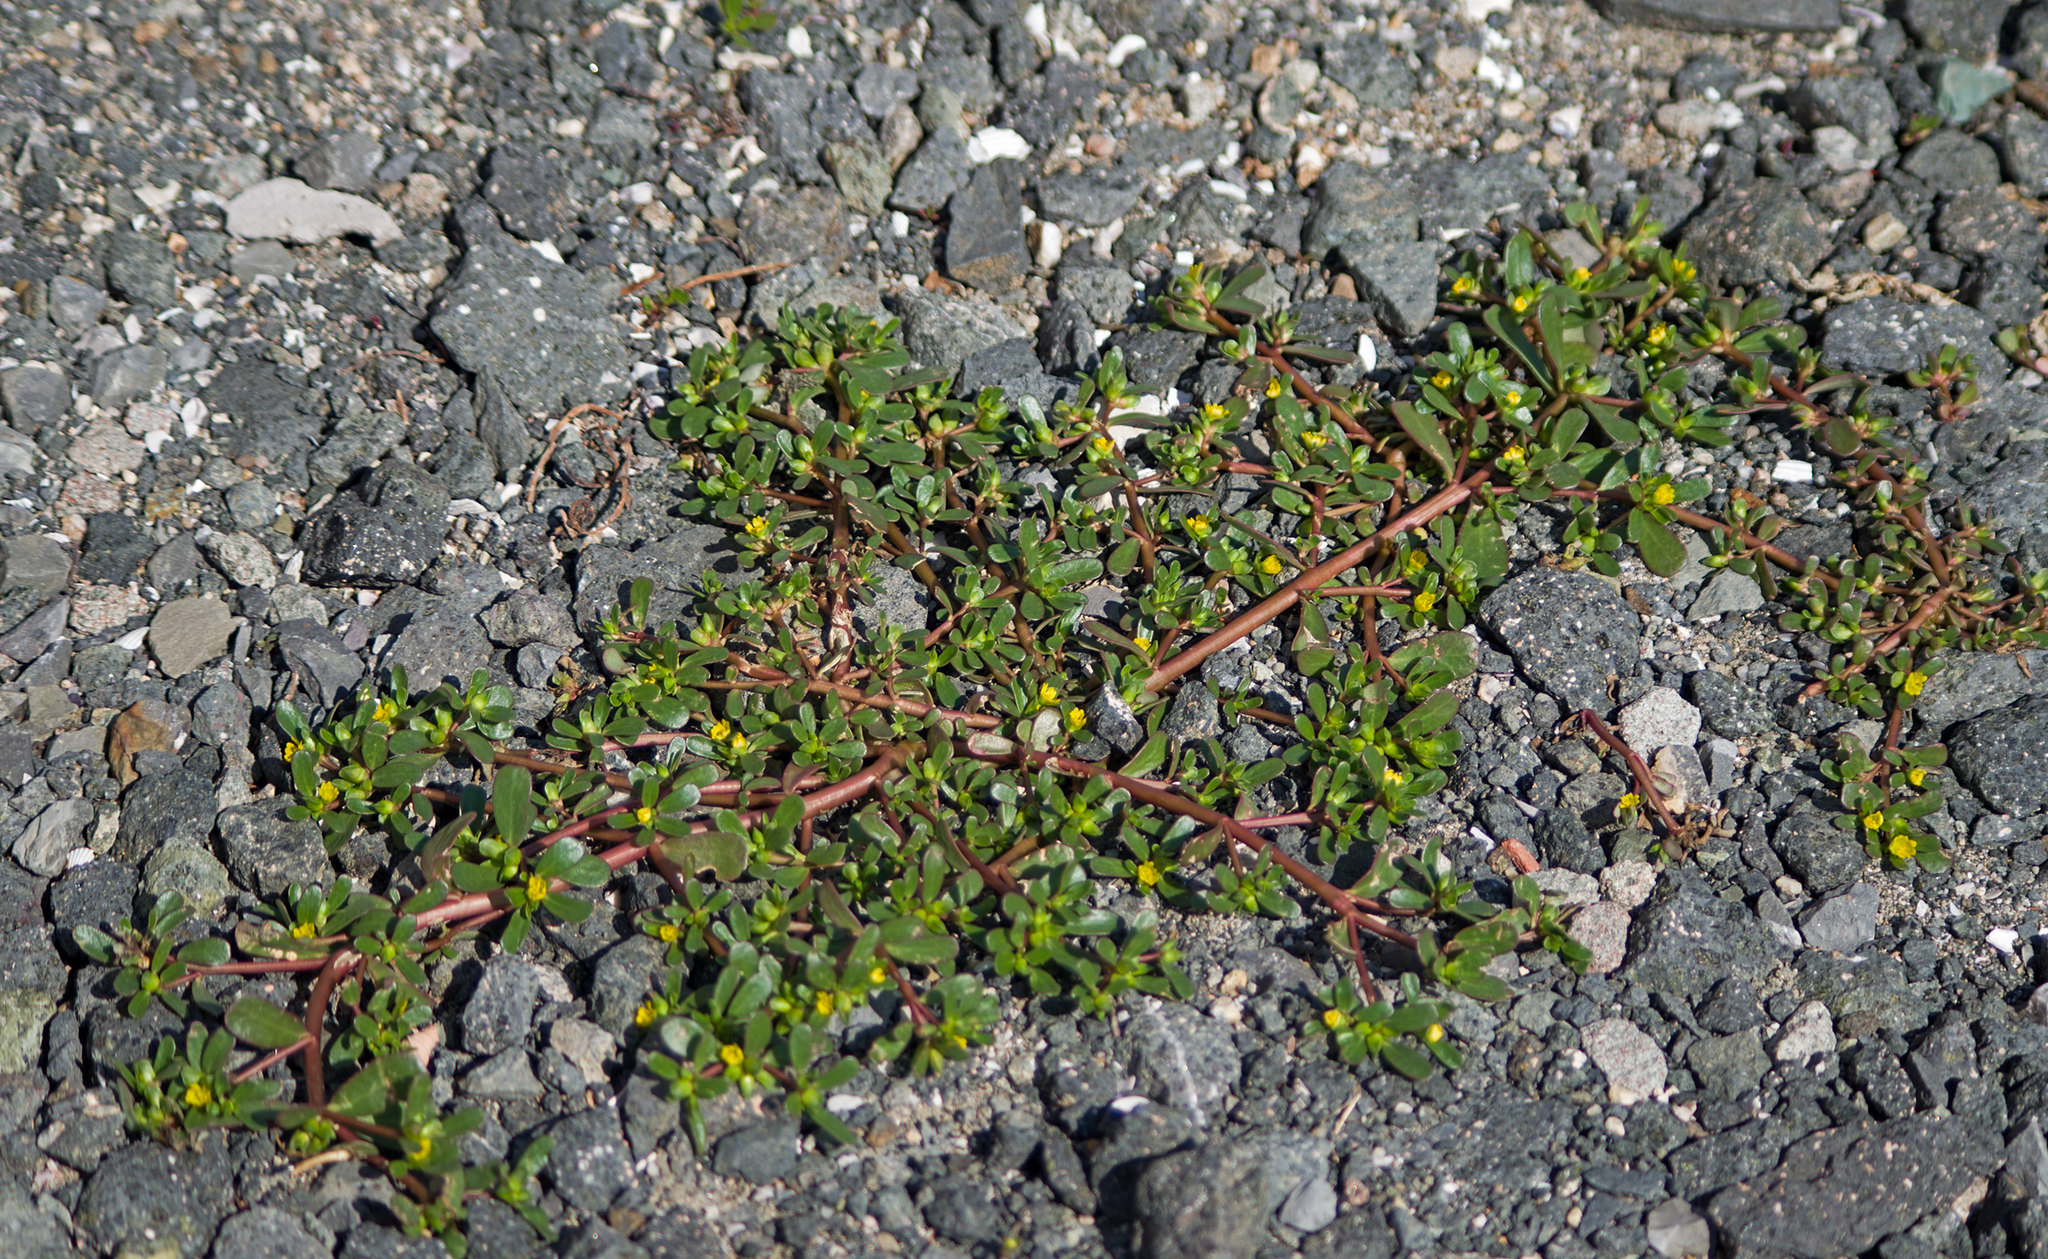 Портулак огородный (Portulaca oleracea)